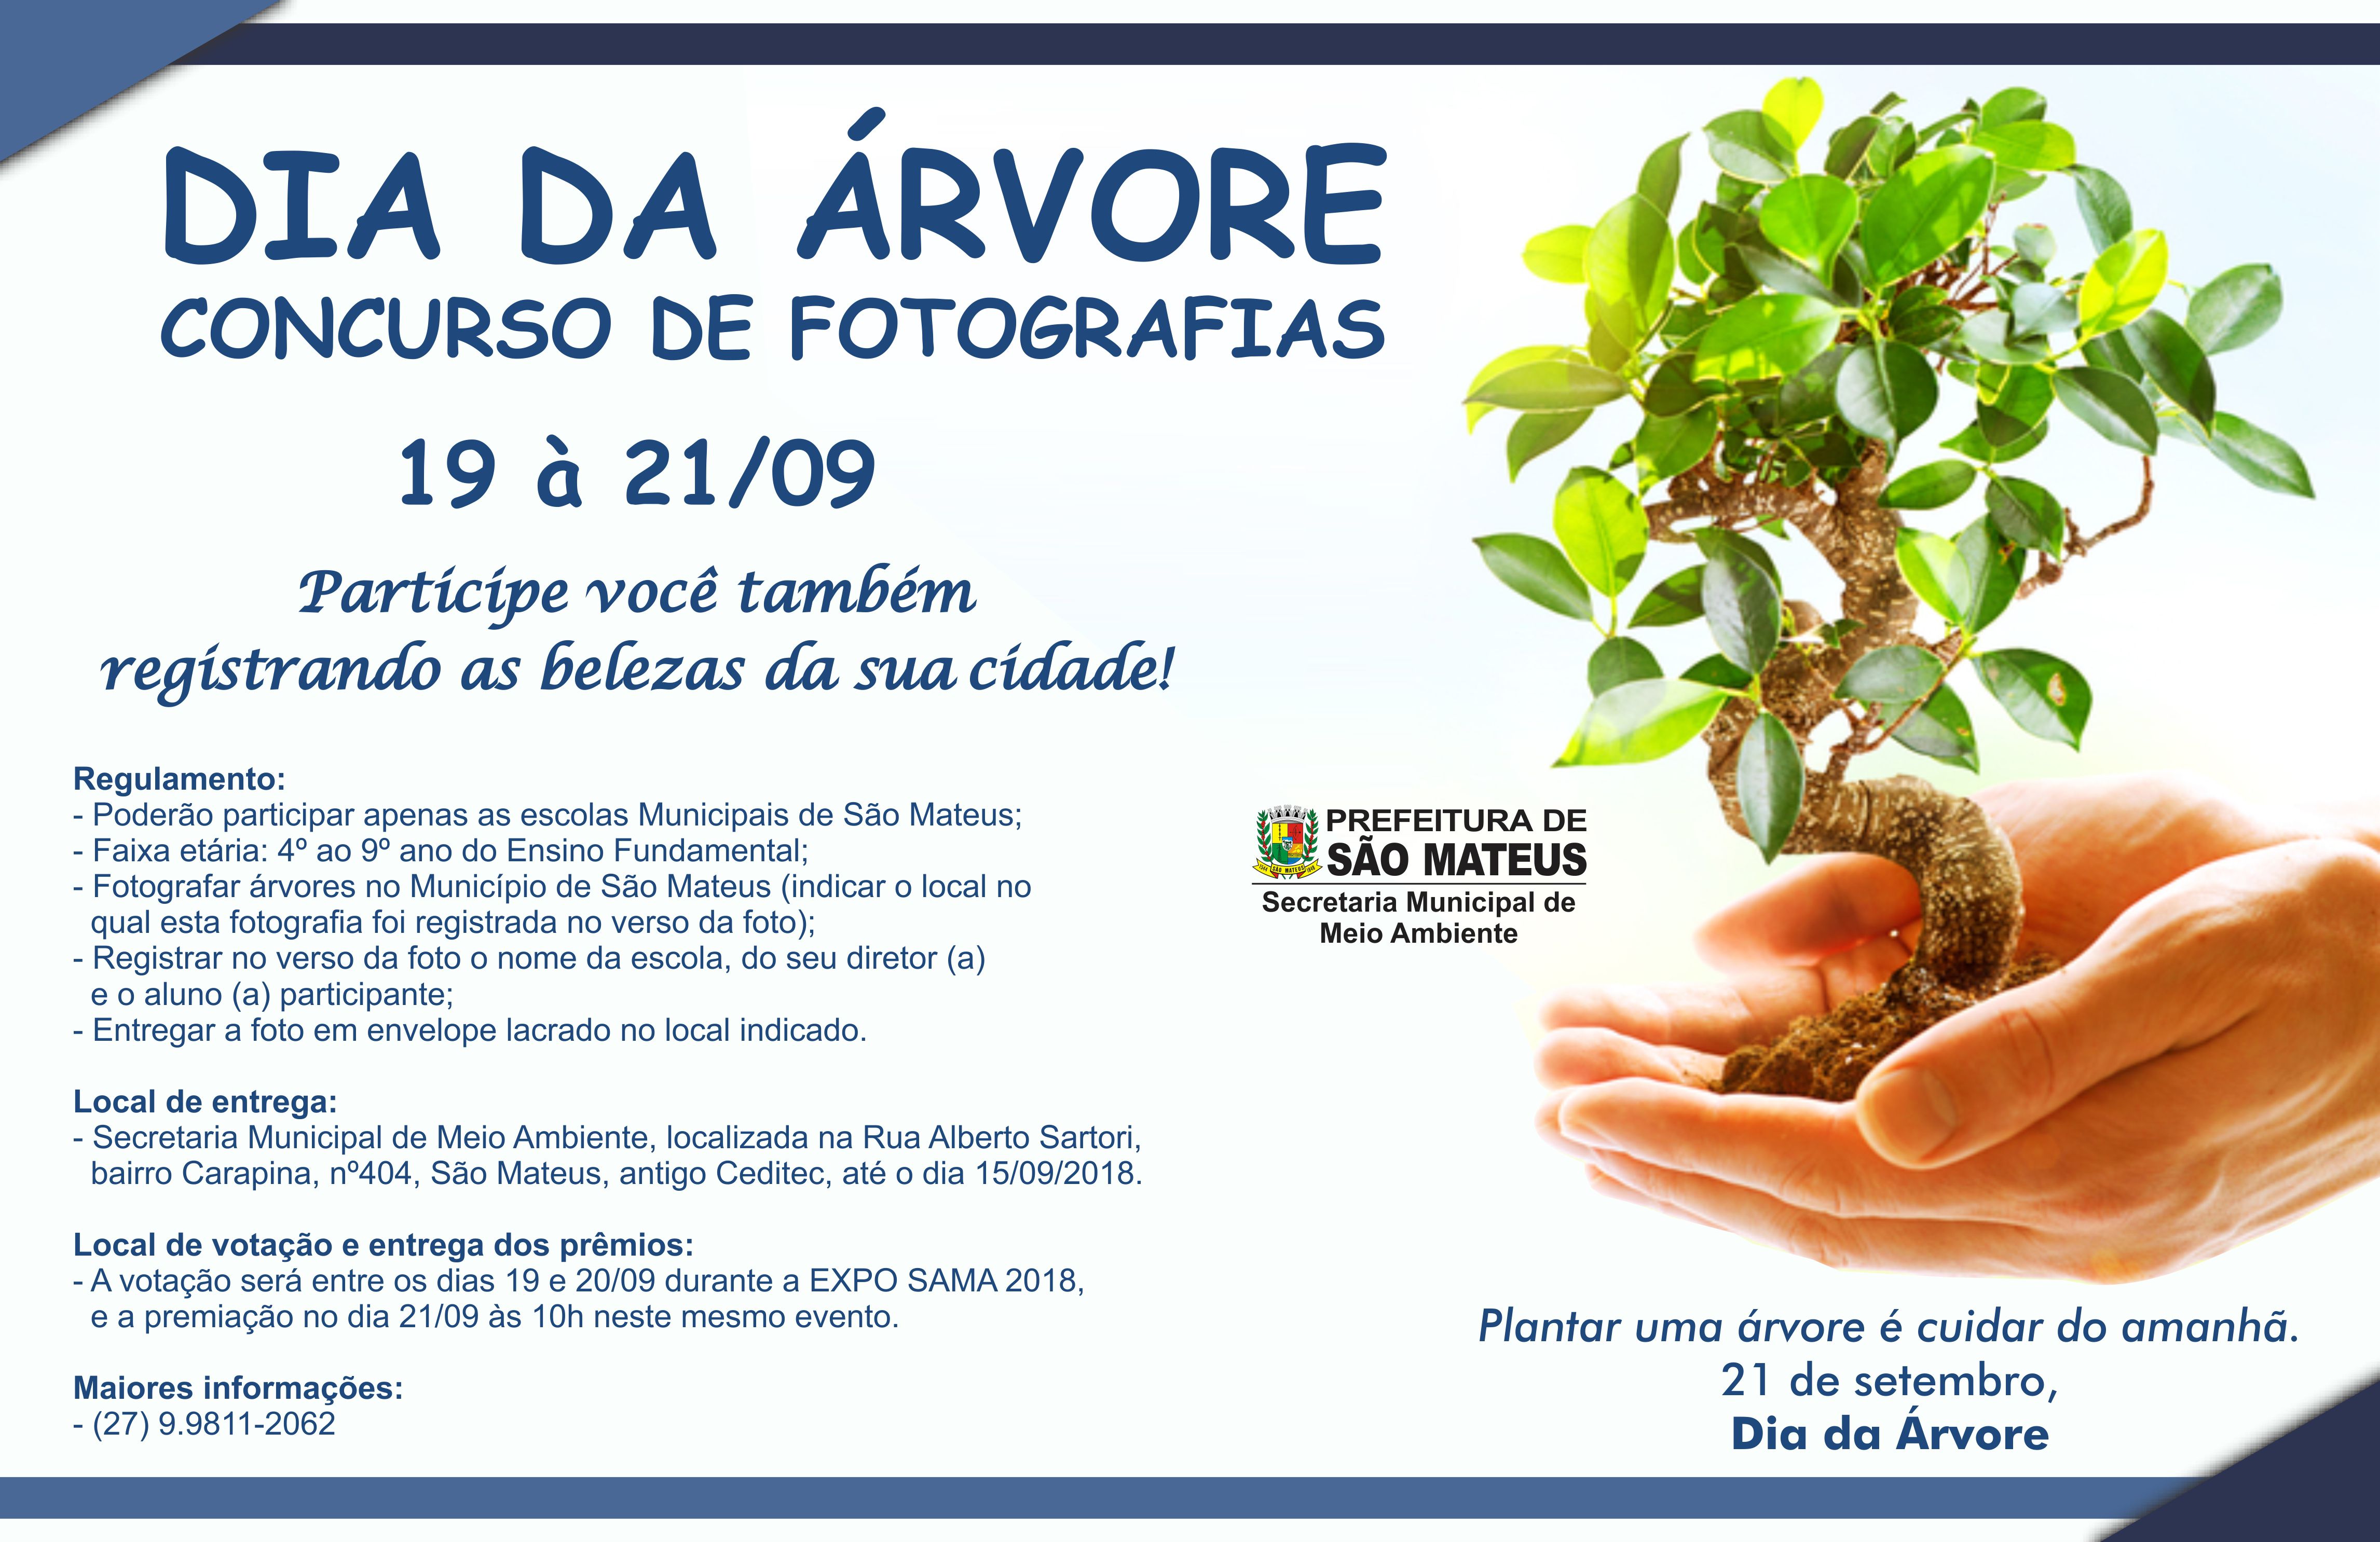 Dia da Árvore comemorado com concurso de fotografias em São Mateus